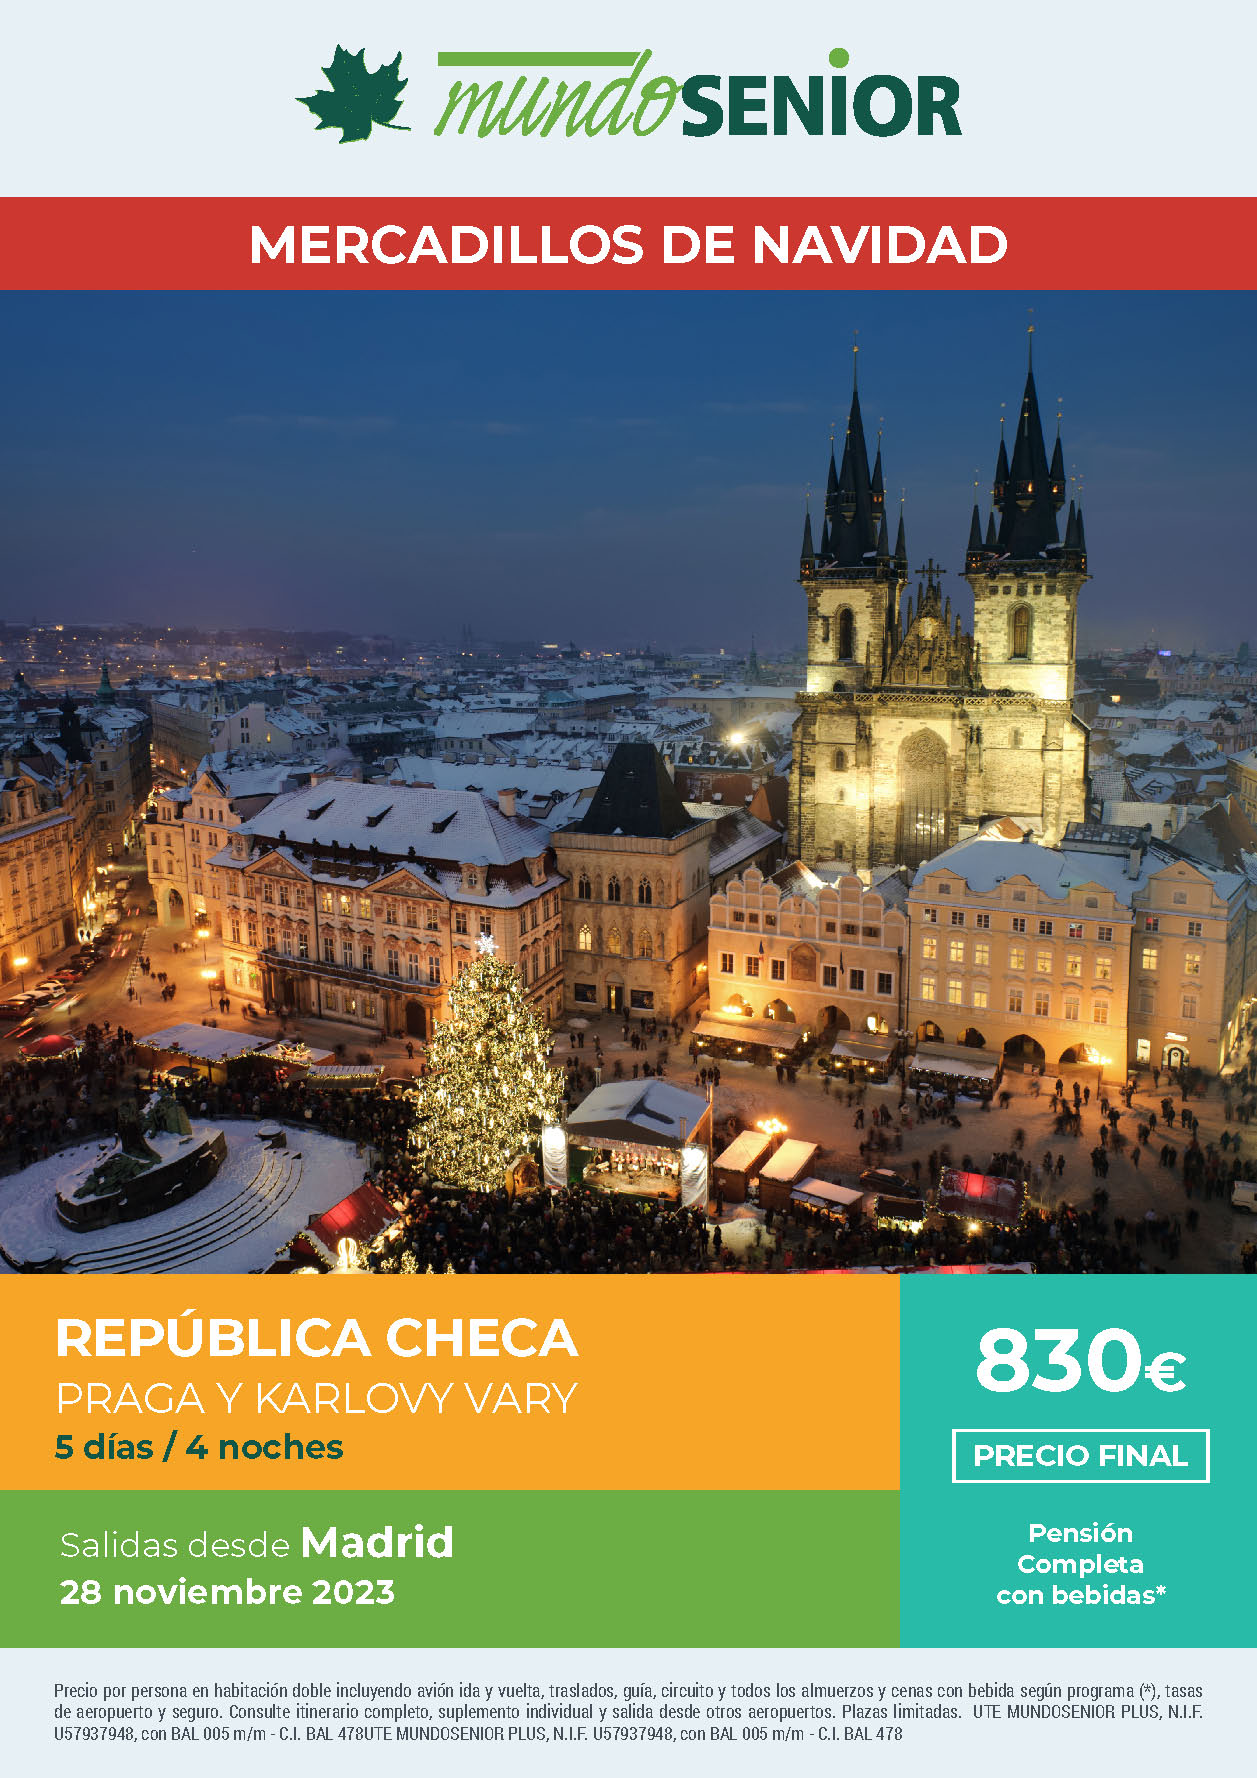 Oferta Mundo Senior Mercadillos de Navidad en Praga y Karlovy Vary Pension Completa 5 dias salidas noviembre y diciembre 2023 desde Madrid